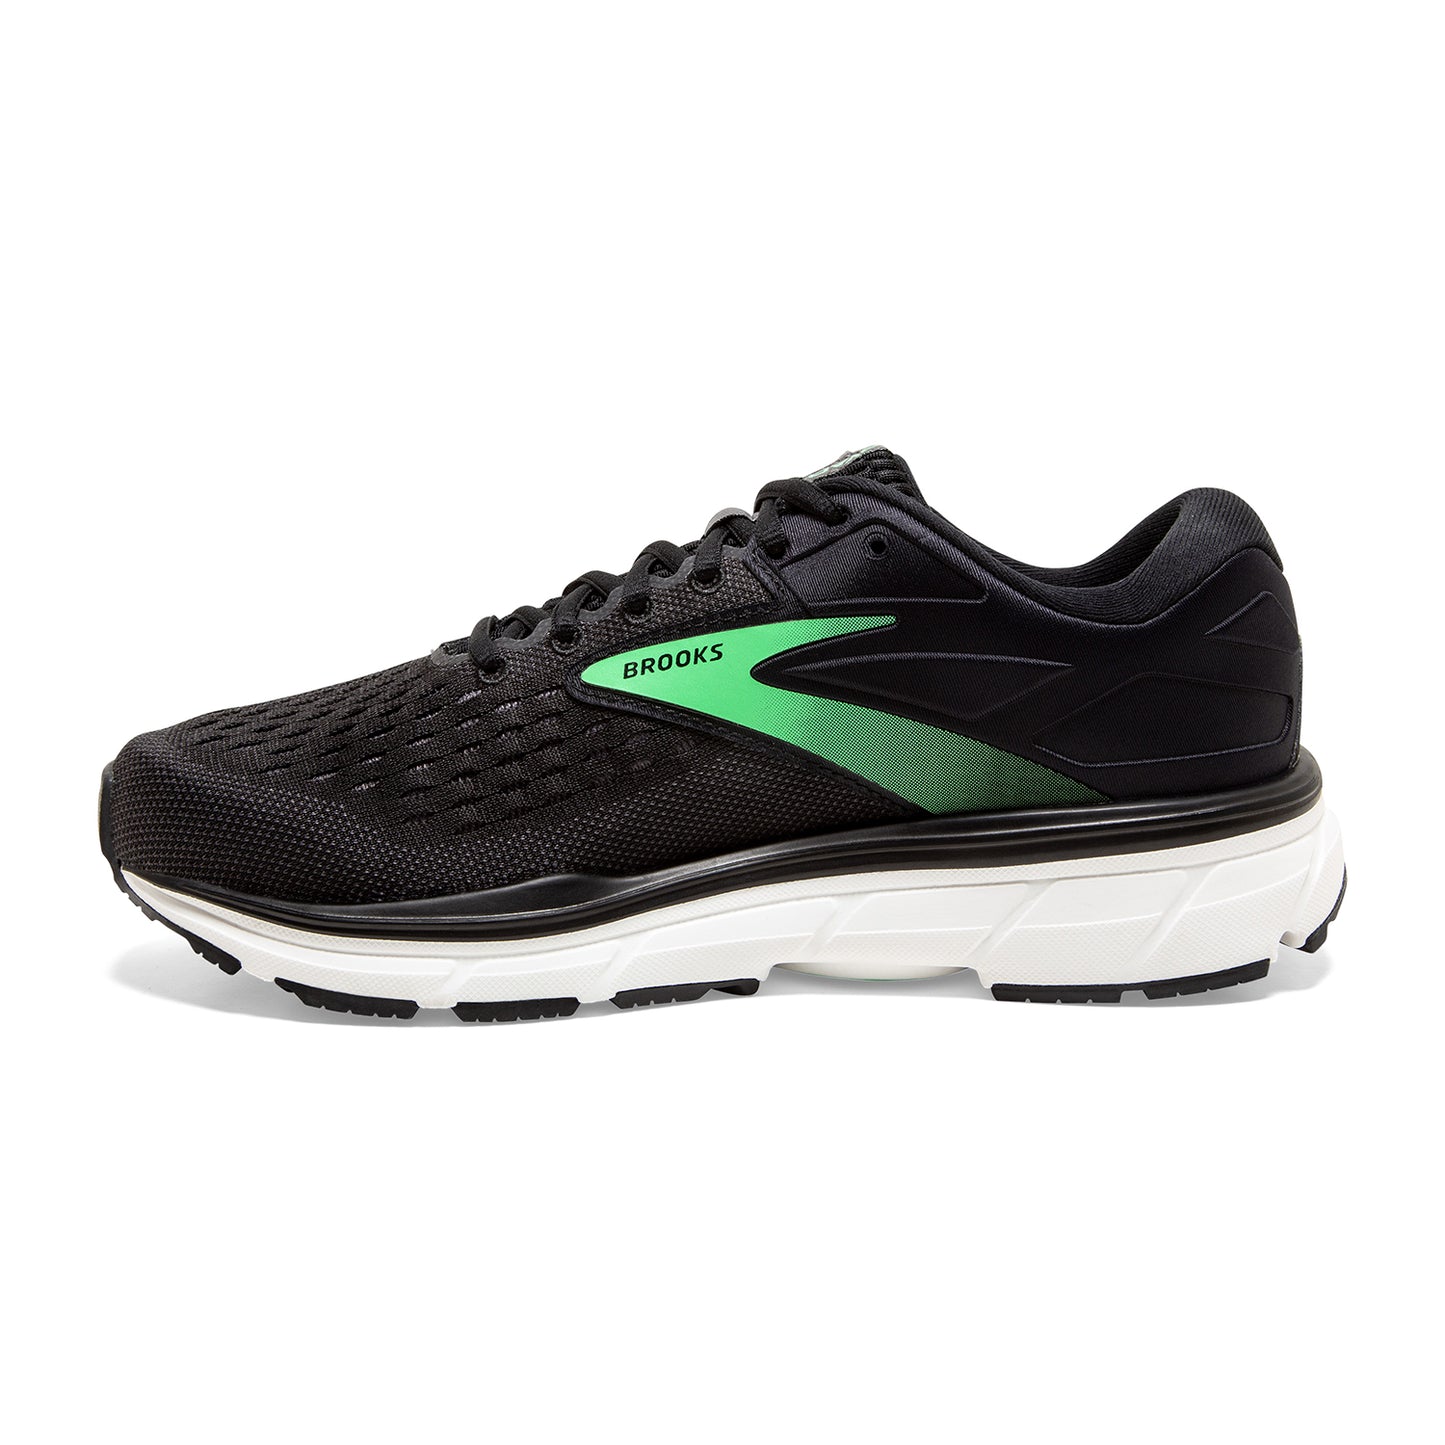 Women's Dyad 11 Running Shoe - Black/Ebony/Green - Extra Wide (2E)